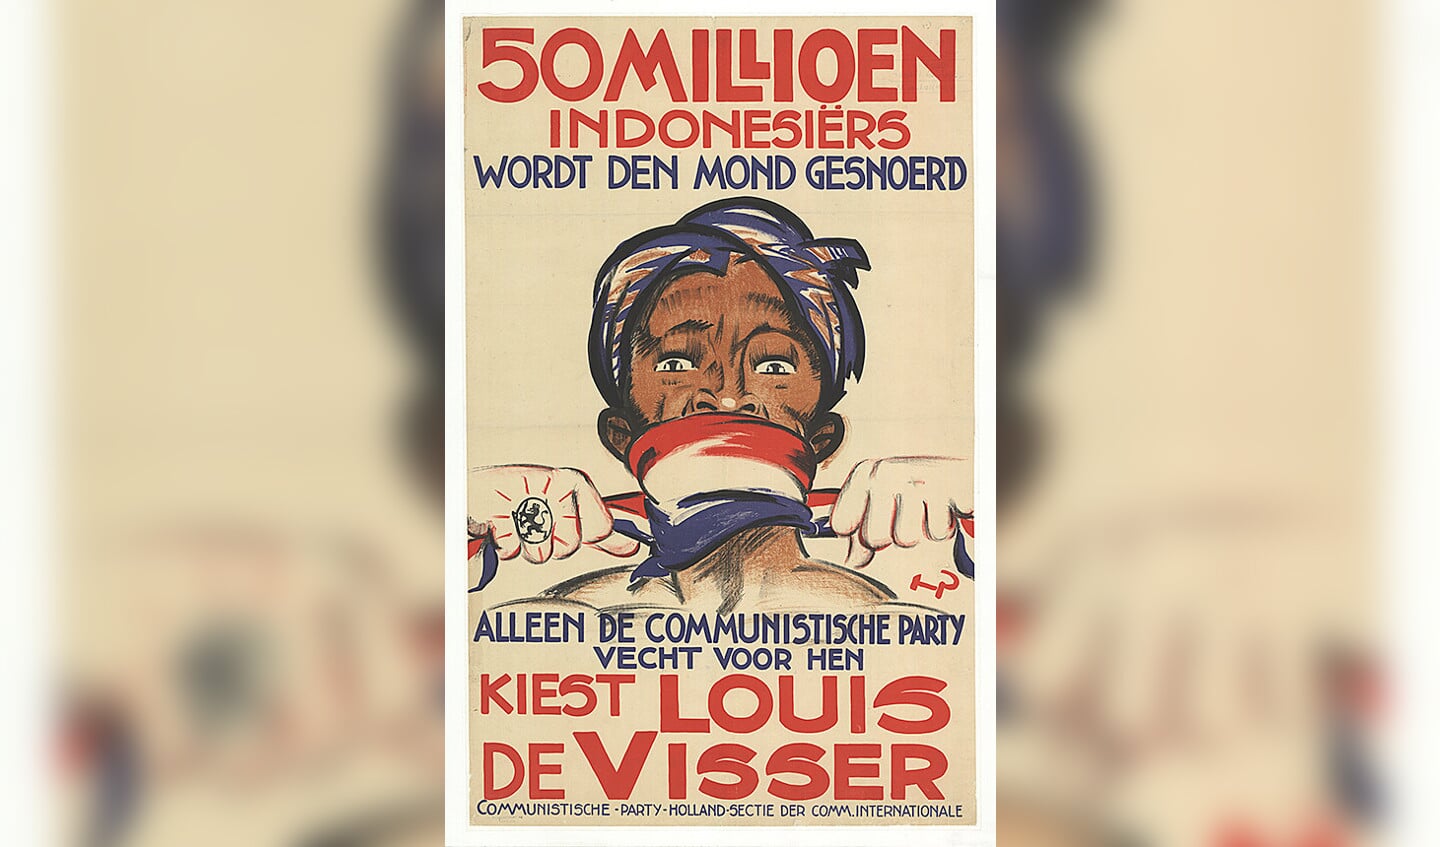 Communistische verkiezingsposter uit de jaren dertig tegen het kolonialisme in Nederlands-Indië.